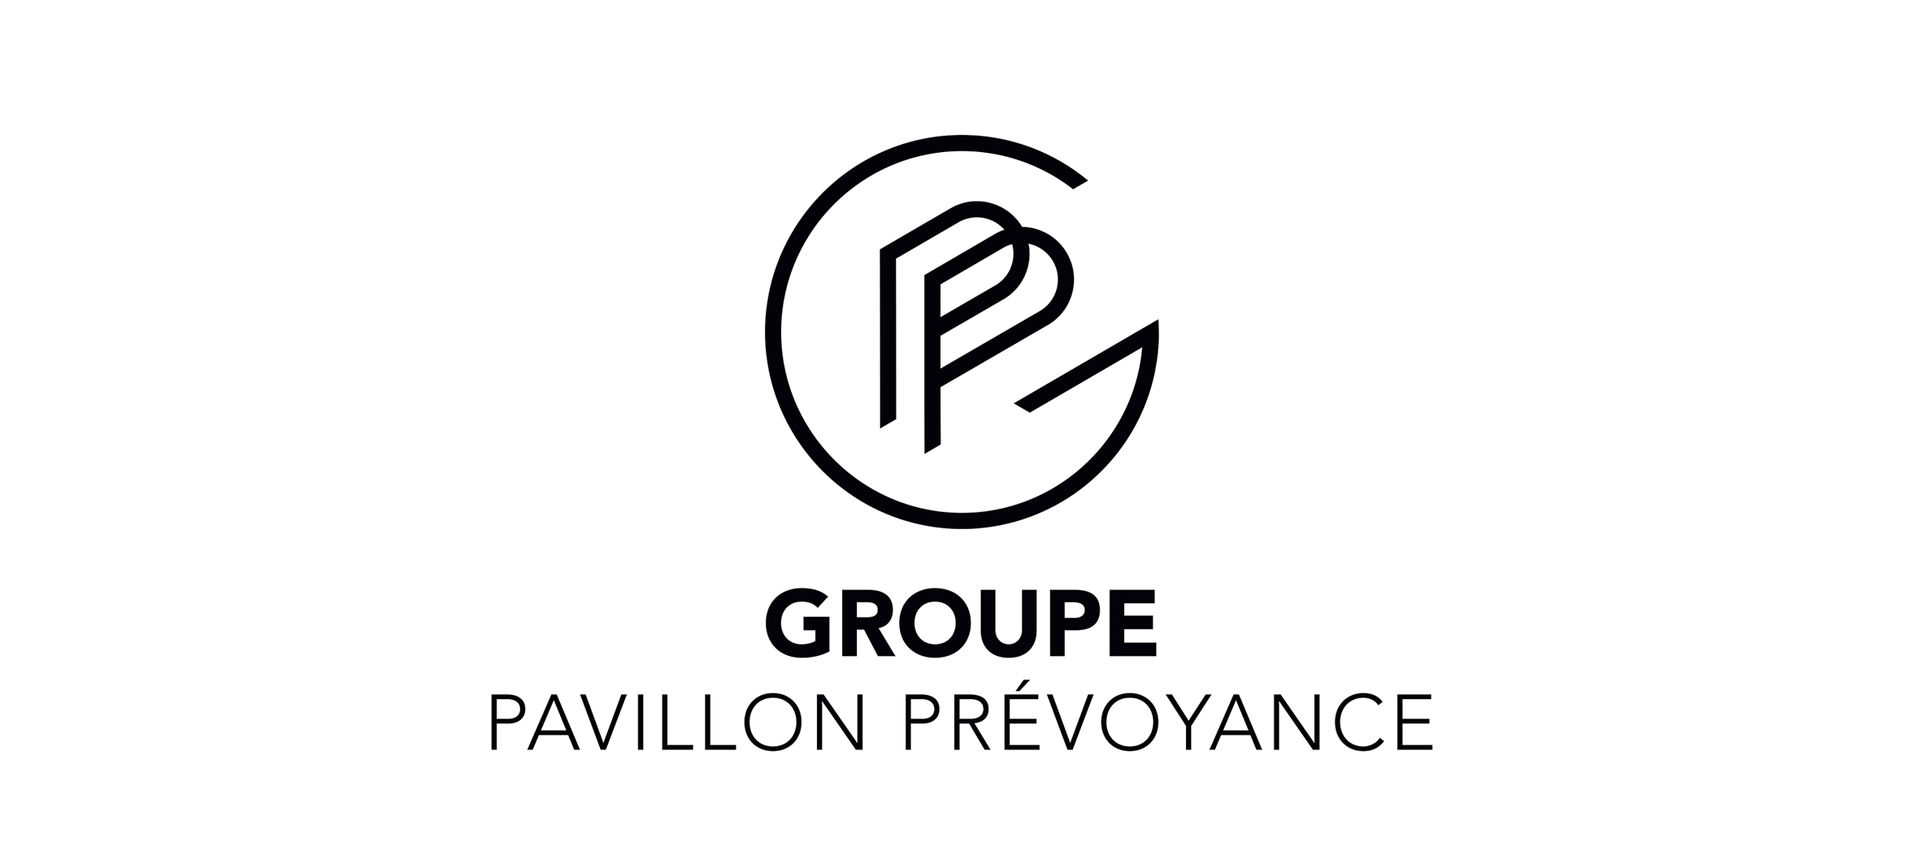 Groupe Pavillon Prévoyance : création d'une identité graphique et visuelle (photo 5)